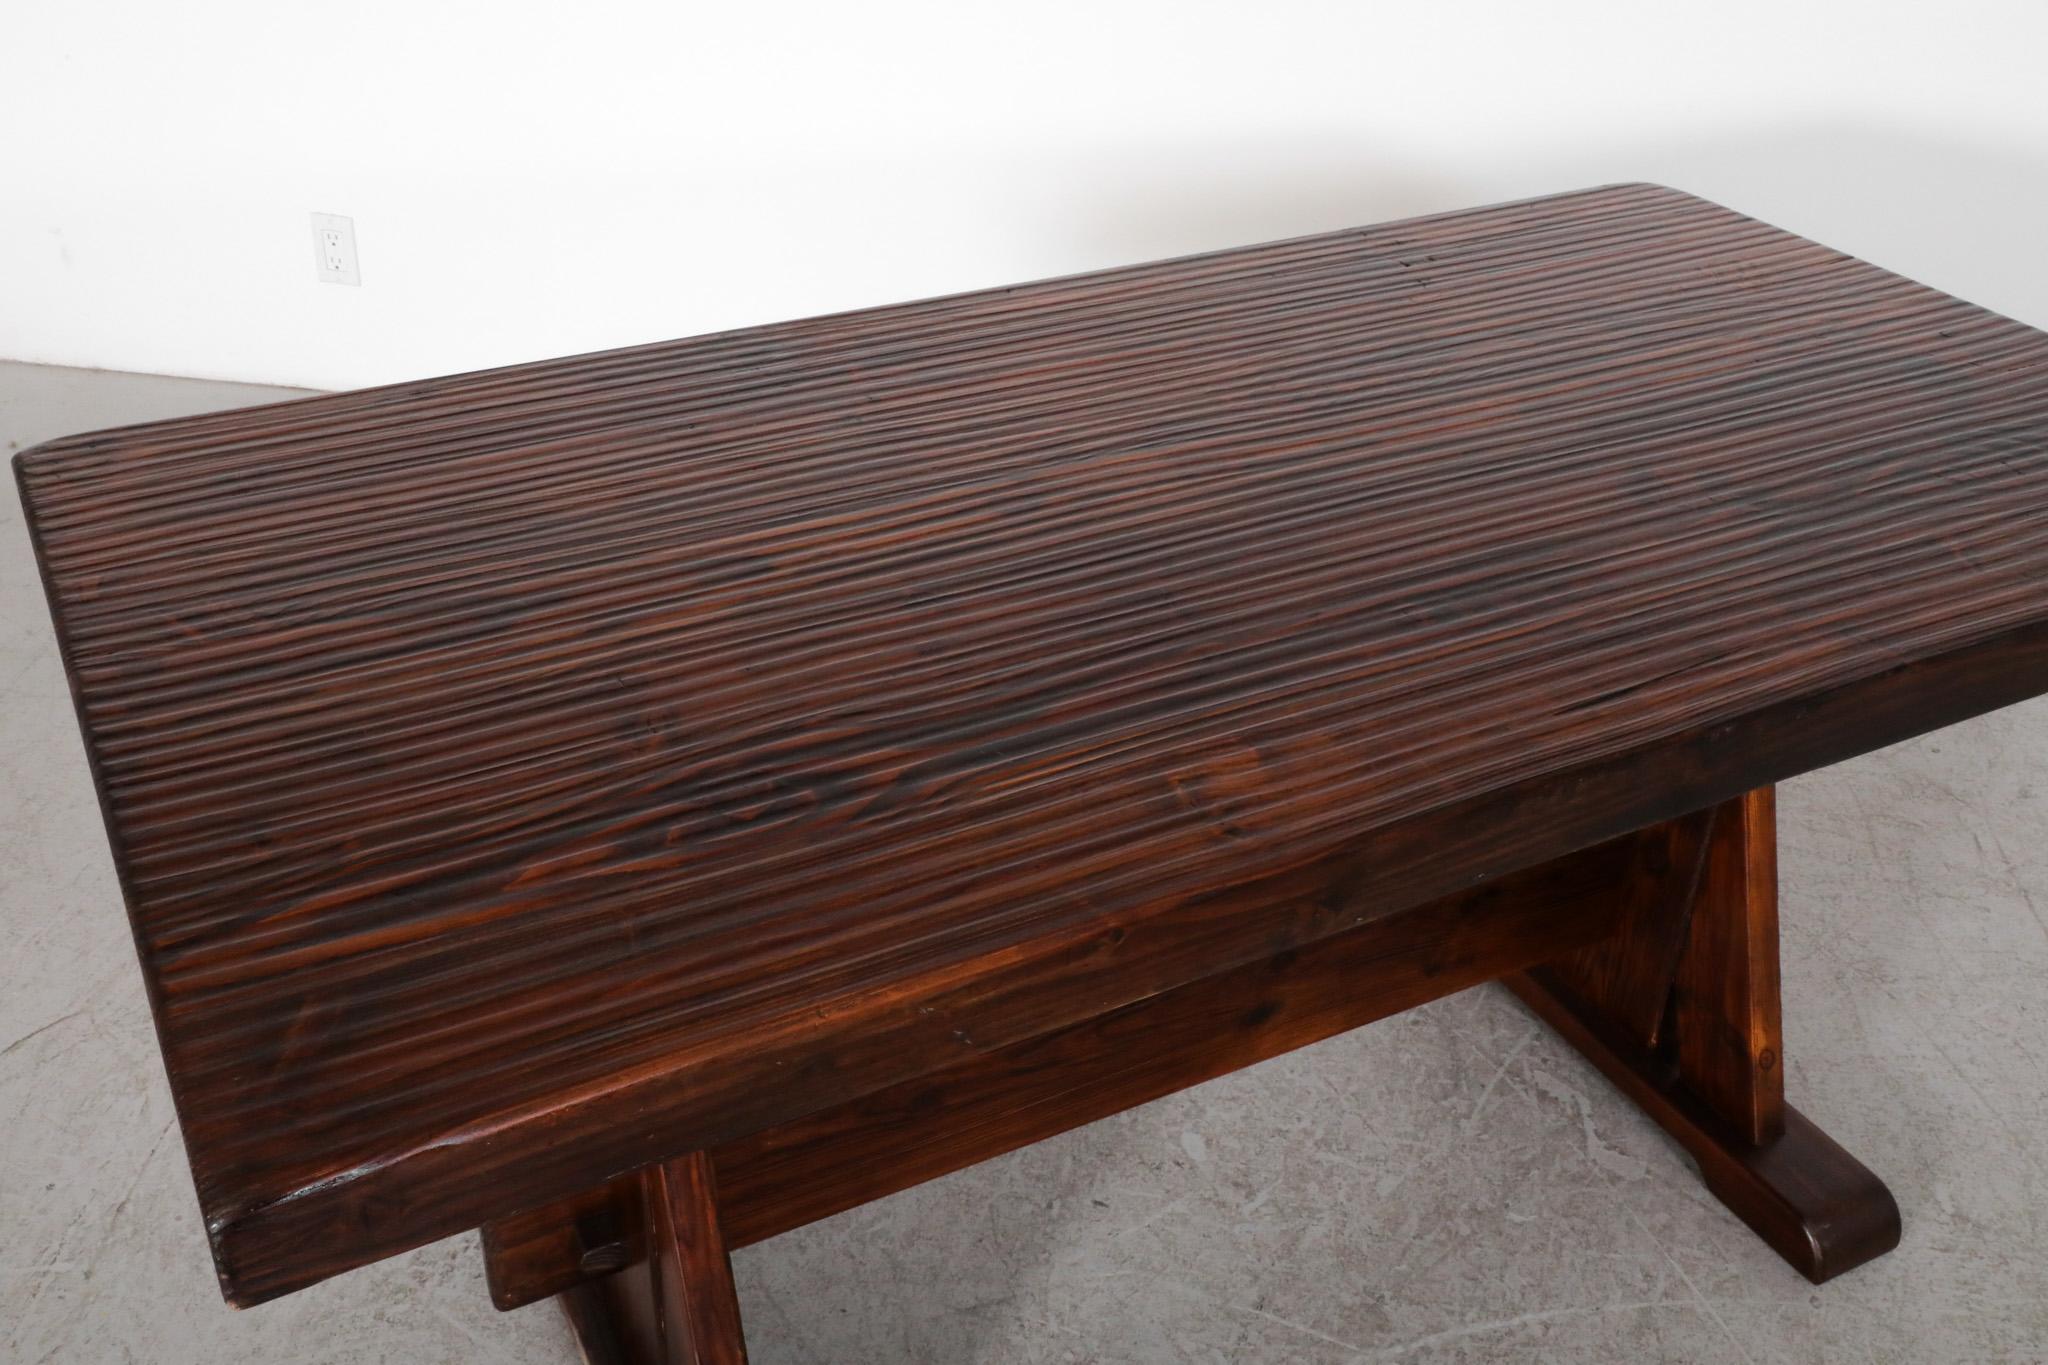 De Puydt Heavy Brutalist Oak Trestle Table with Textured Grain For Sale 1